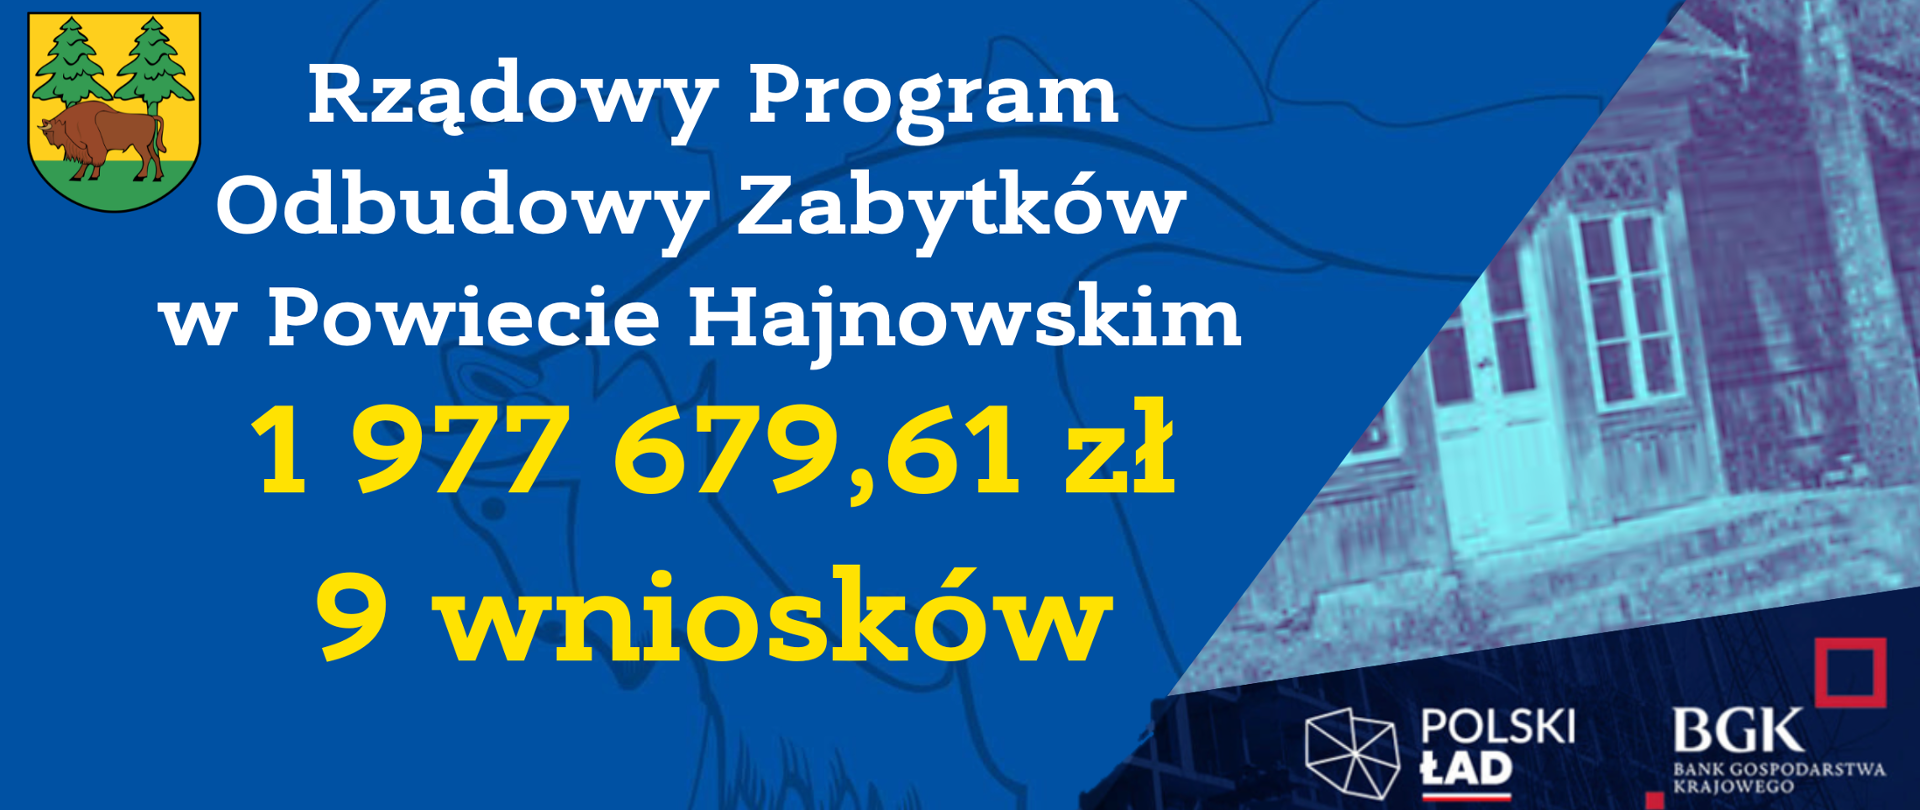 Rządowy Program Odbudowy Zabytków
w Powiecie Hajnowskim
1 977 679,61 zł
9 wniosków